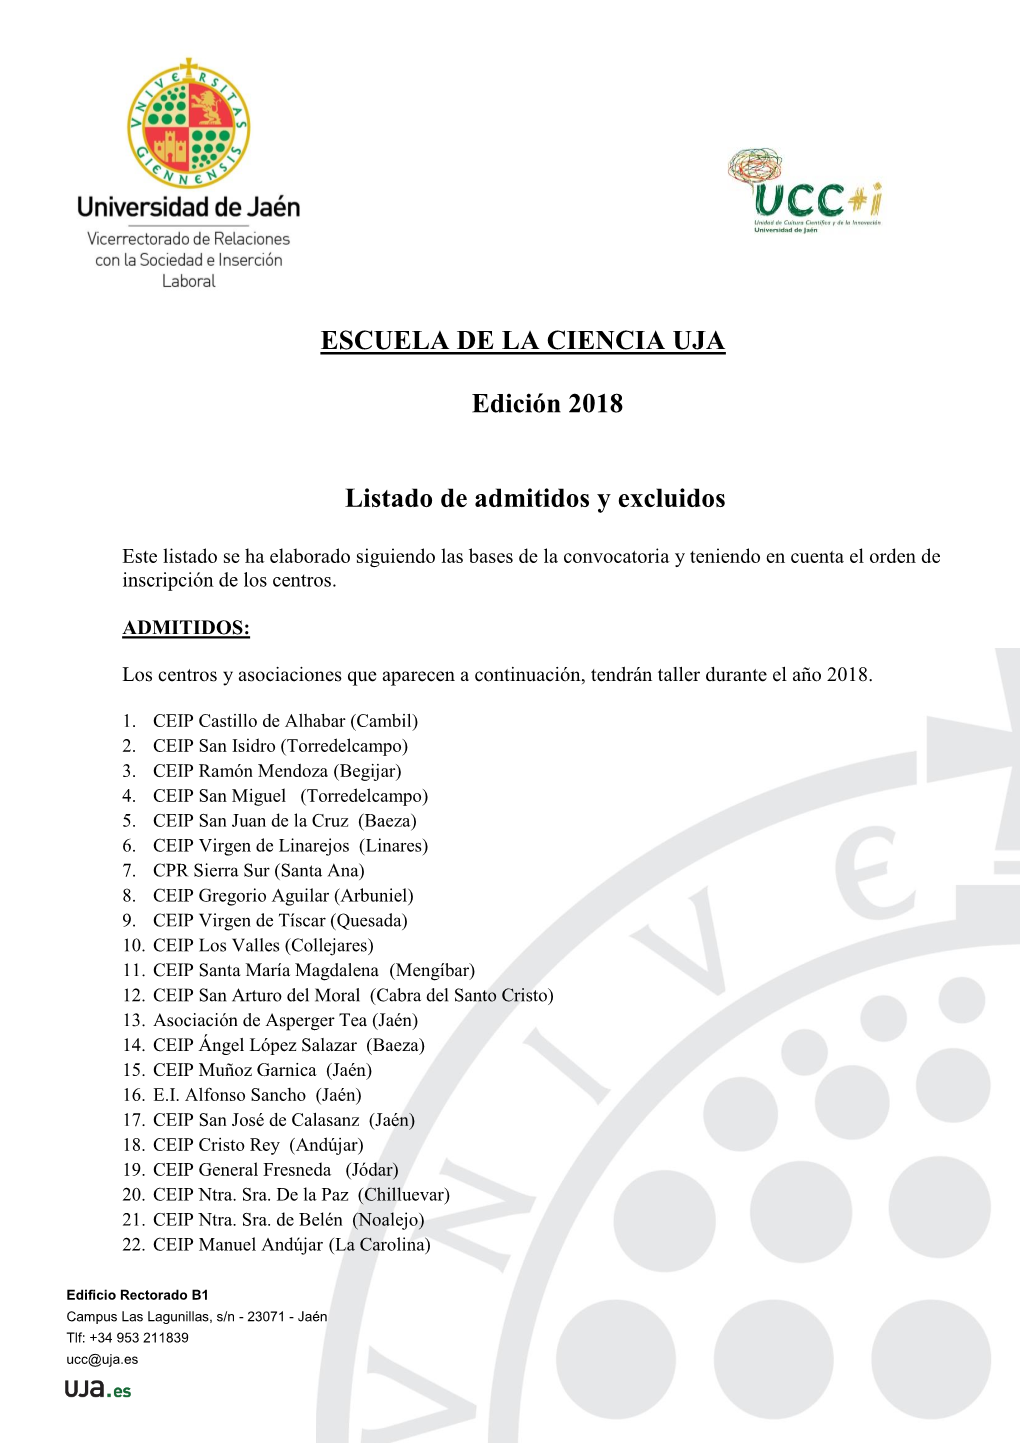 ESCUELA DE LA CIENCIA UJA Edición 2018 Listado De Admitidos Y Excluidos